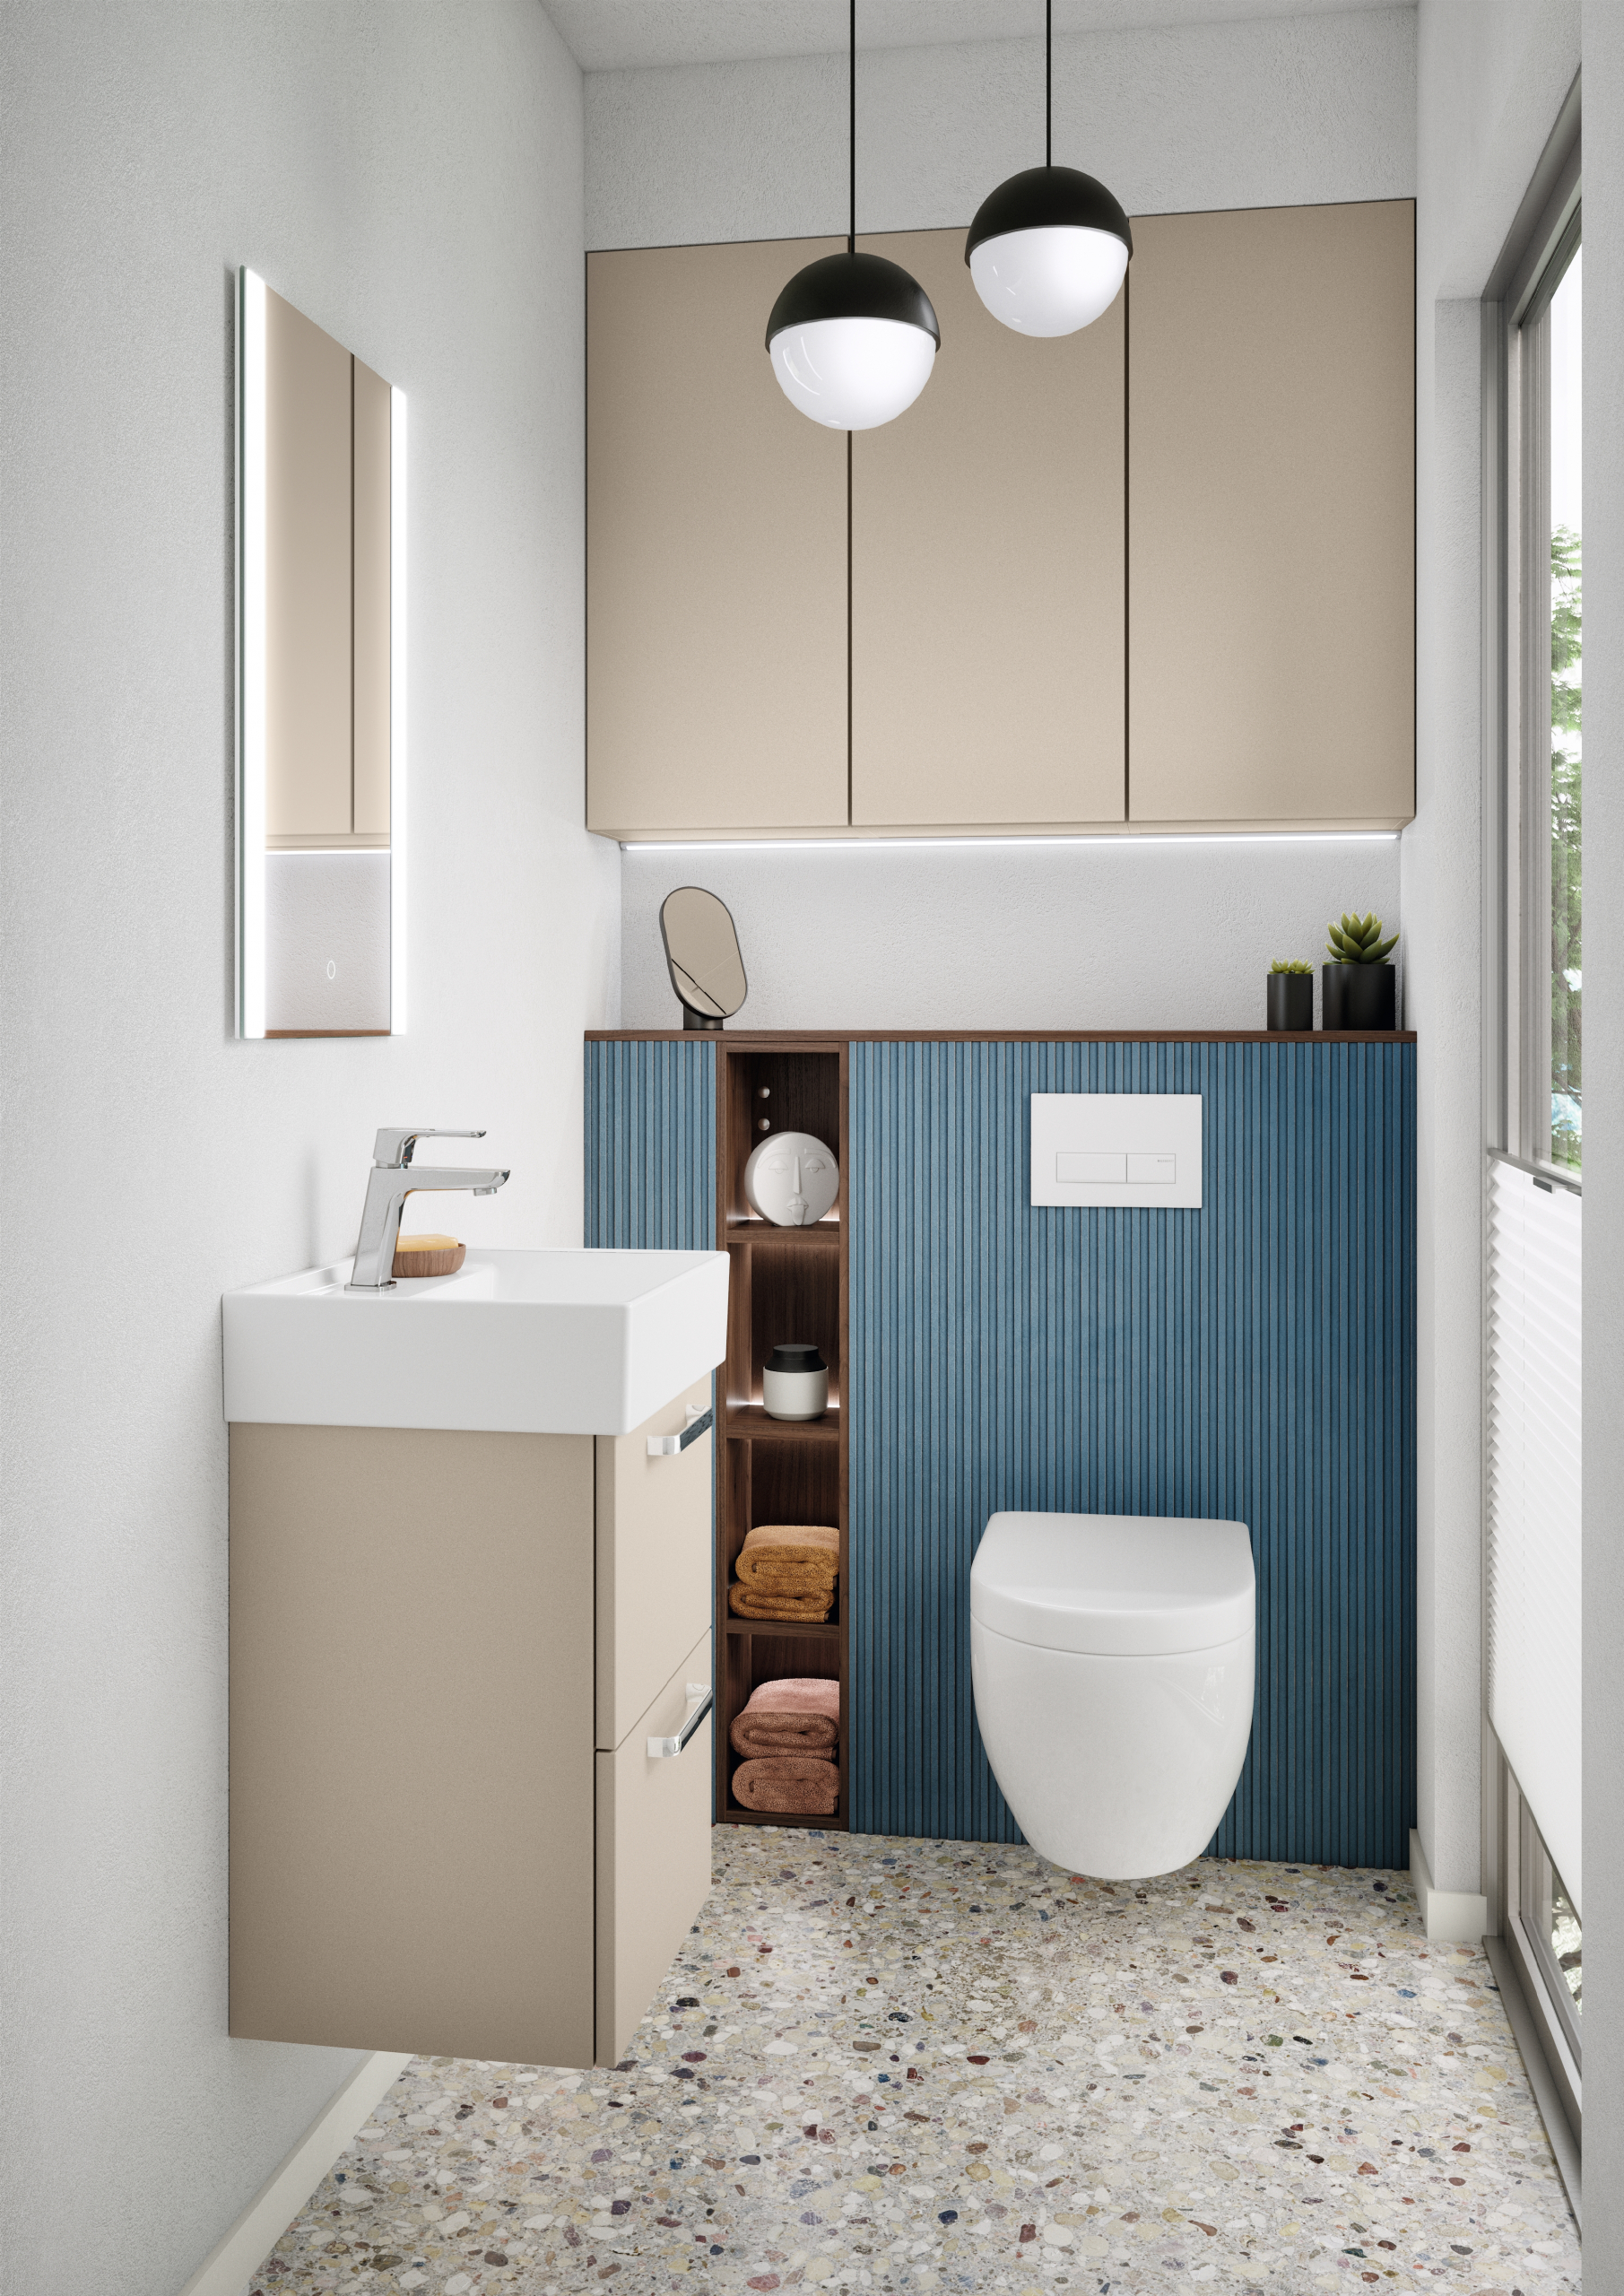 Toilette mit kleinem Waschbecken in hellem, modernem design